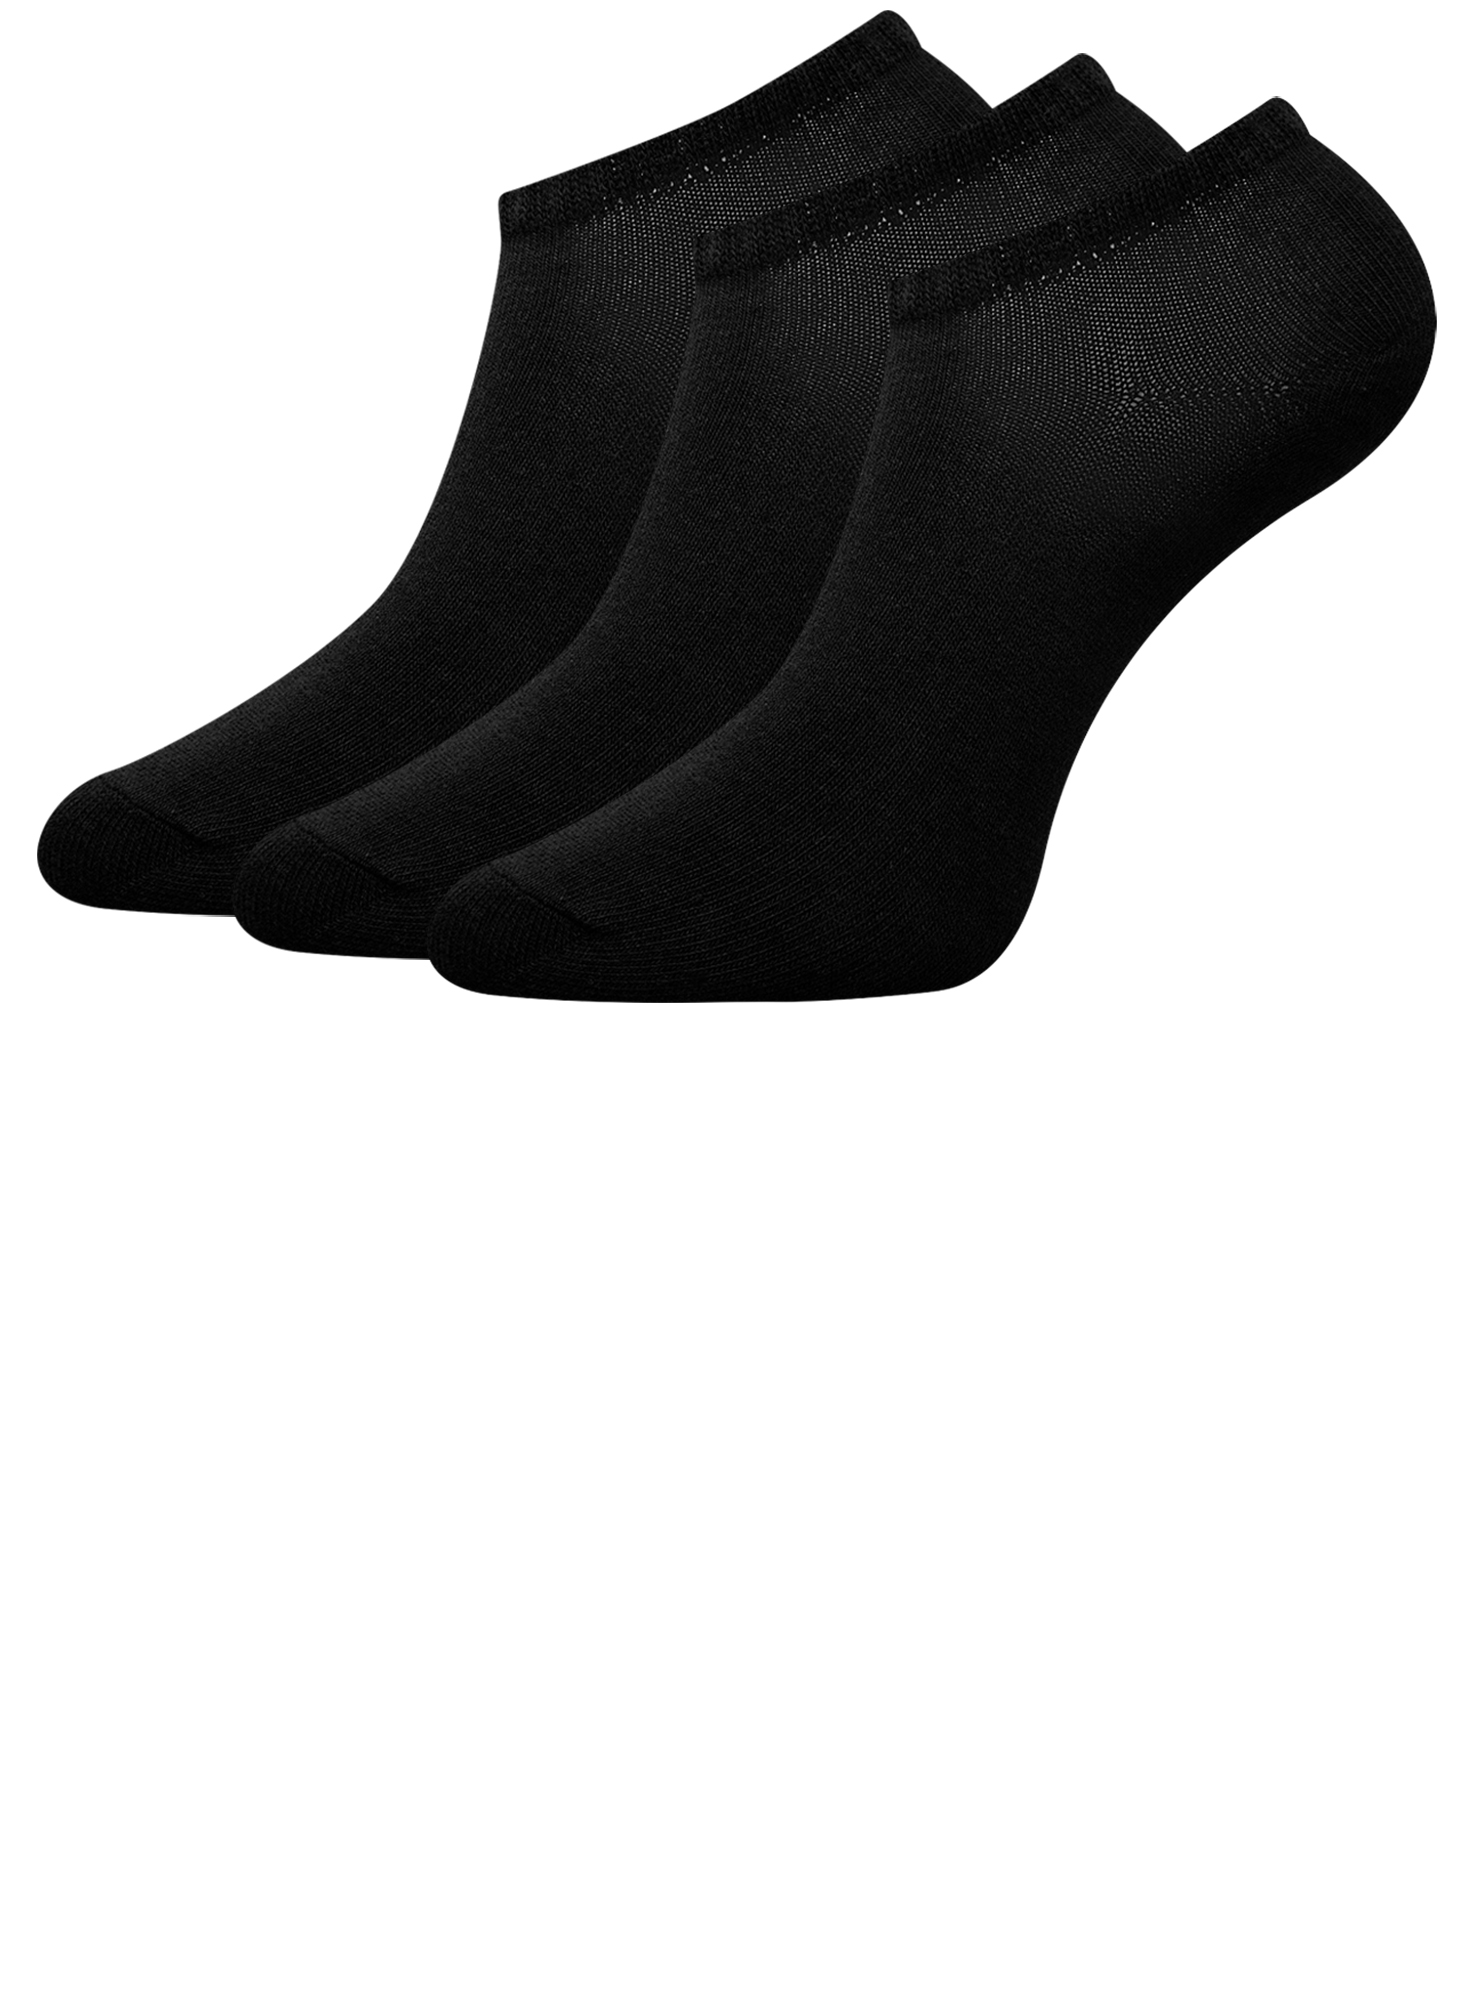 Комплект носков женских oodji 57102433T3 черных 35-37